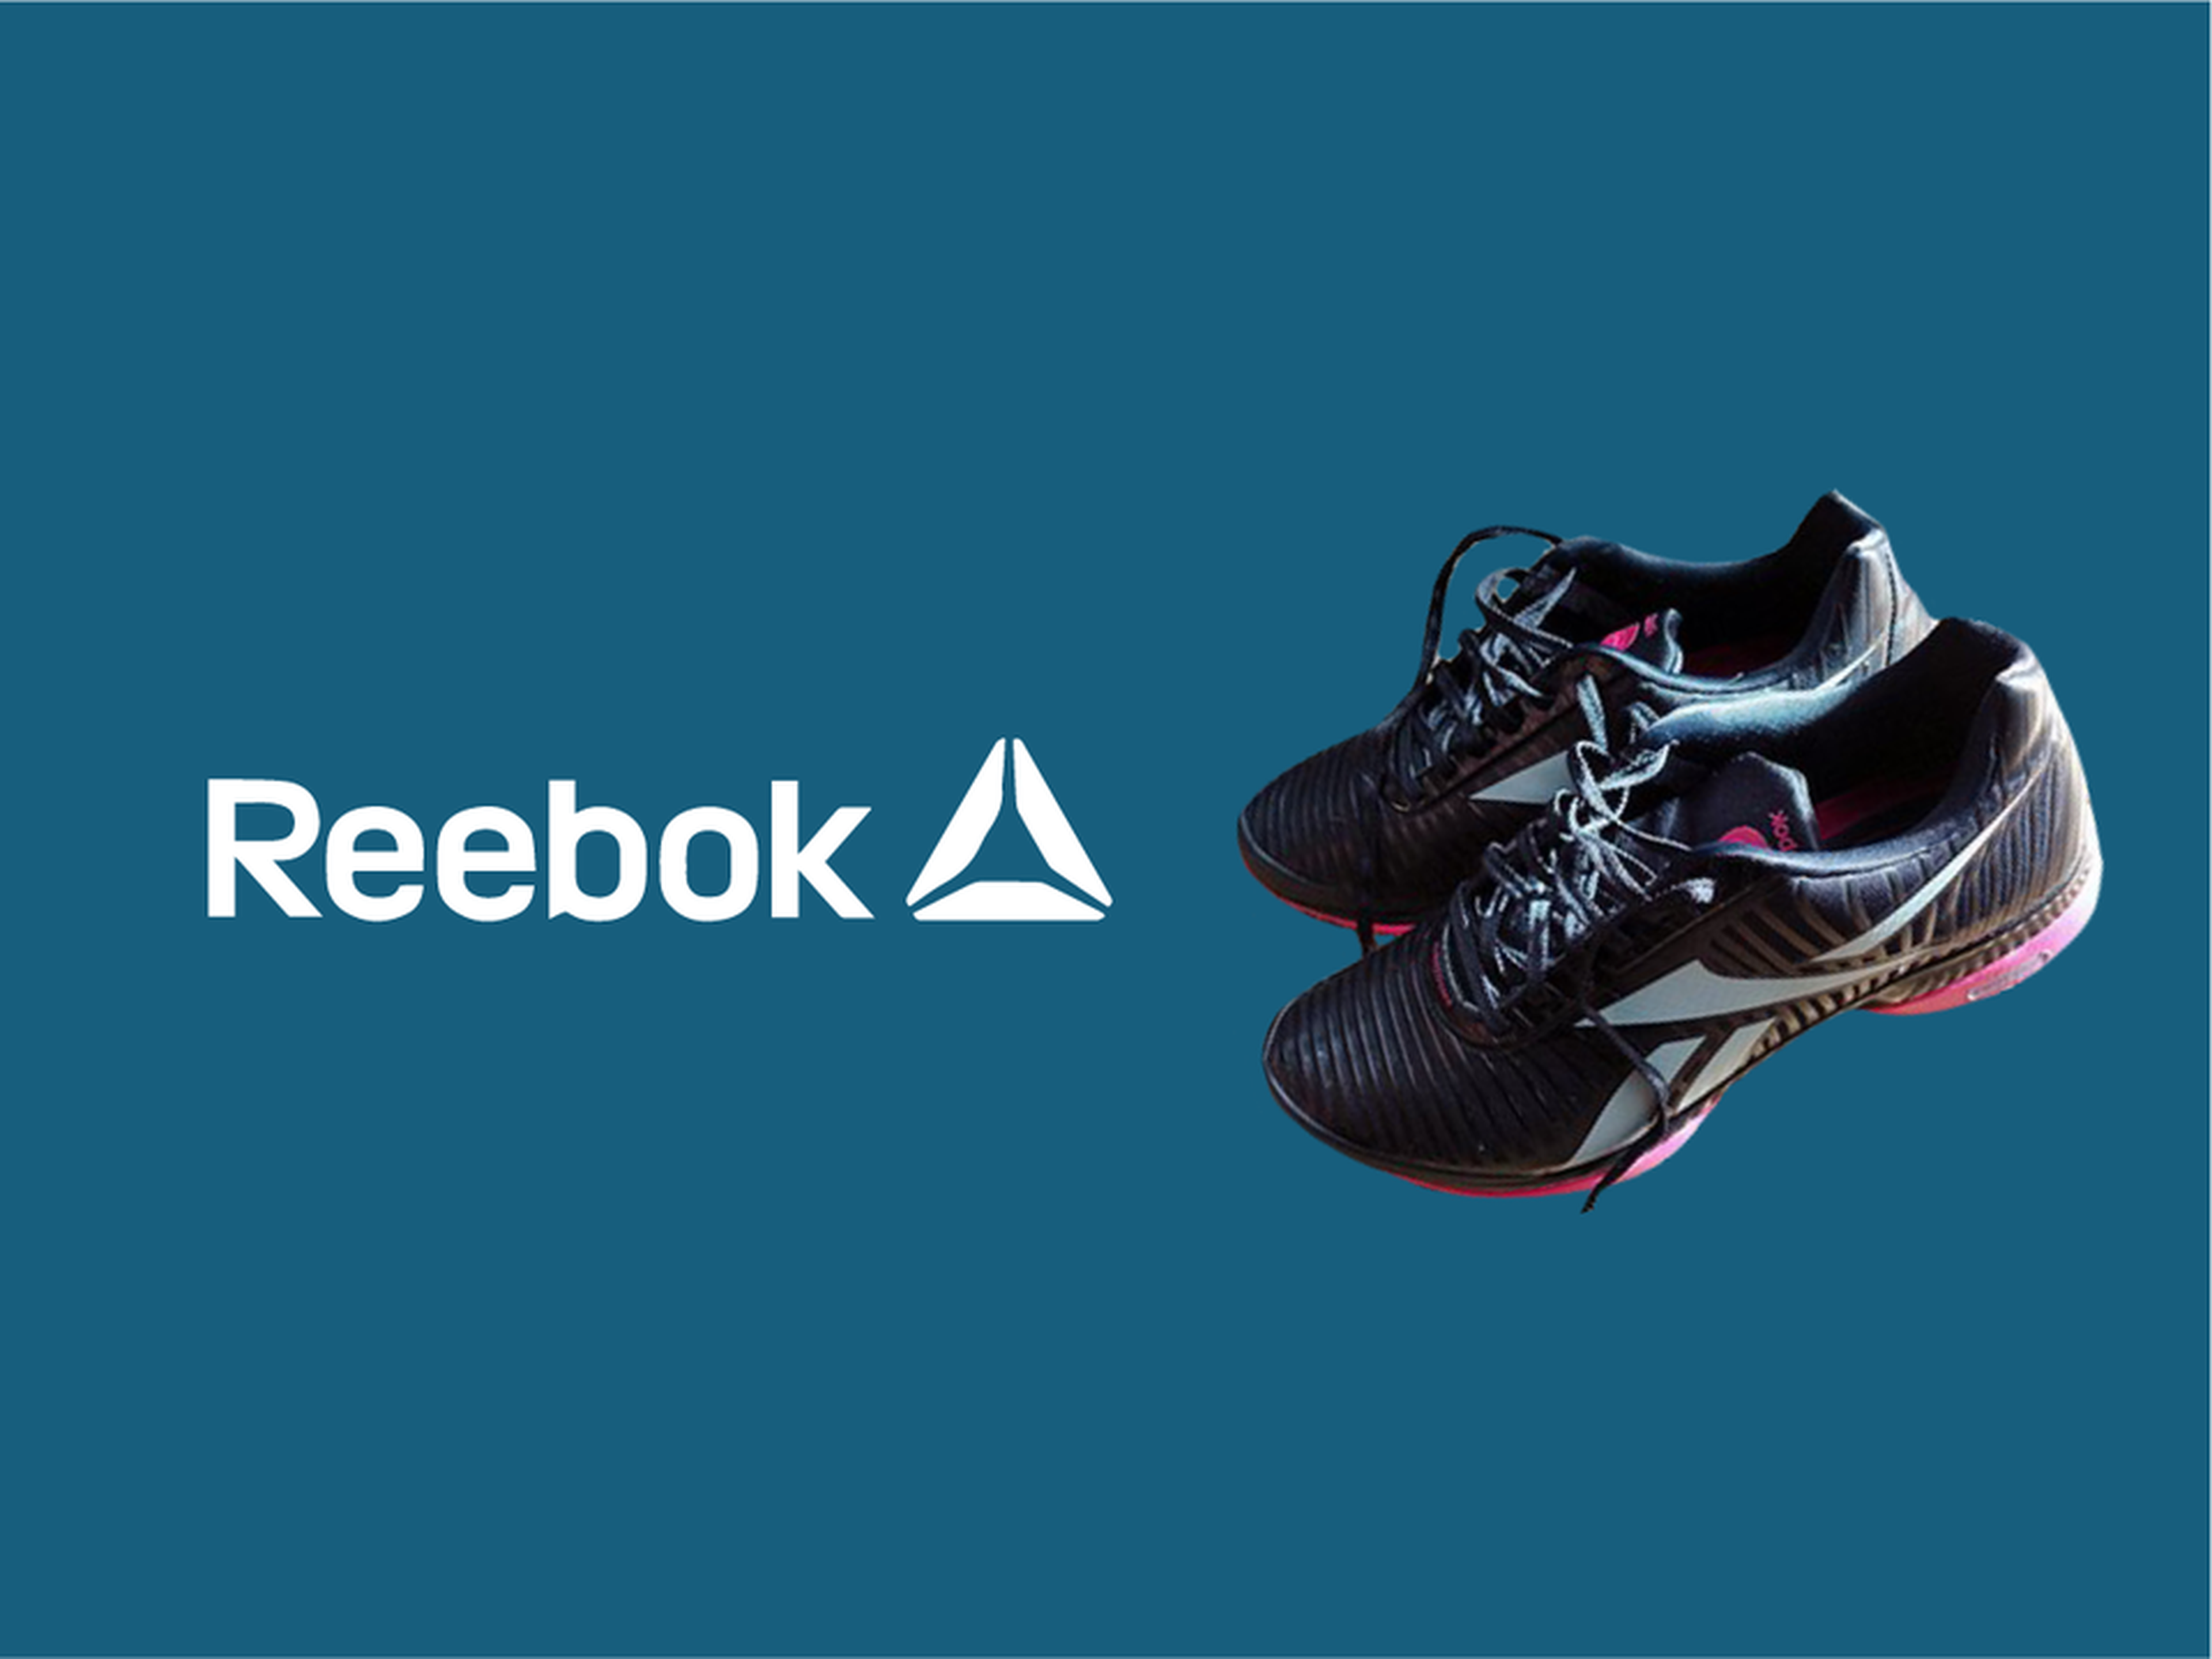 logo de Reebok junto a zapatillas